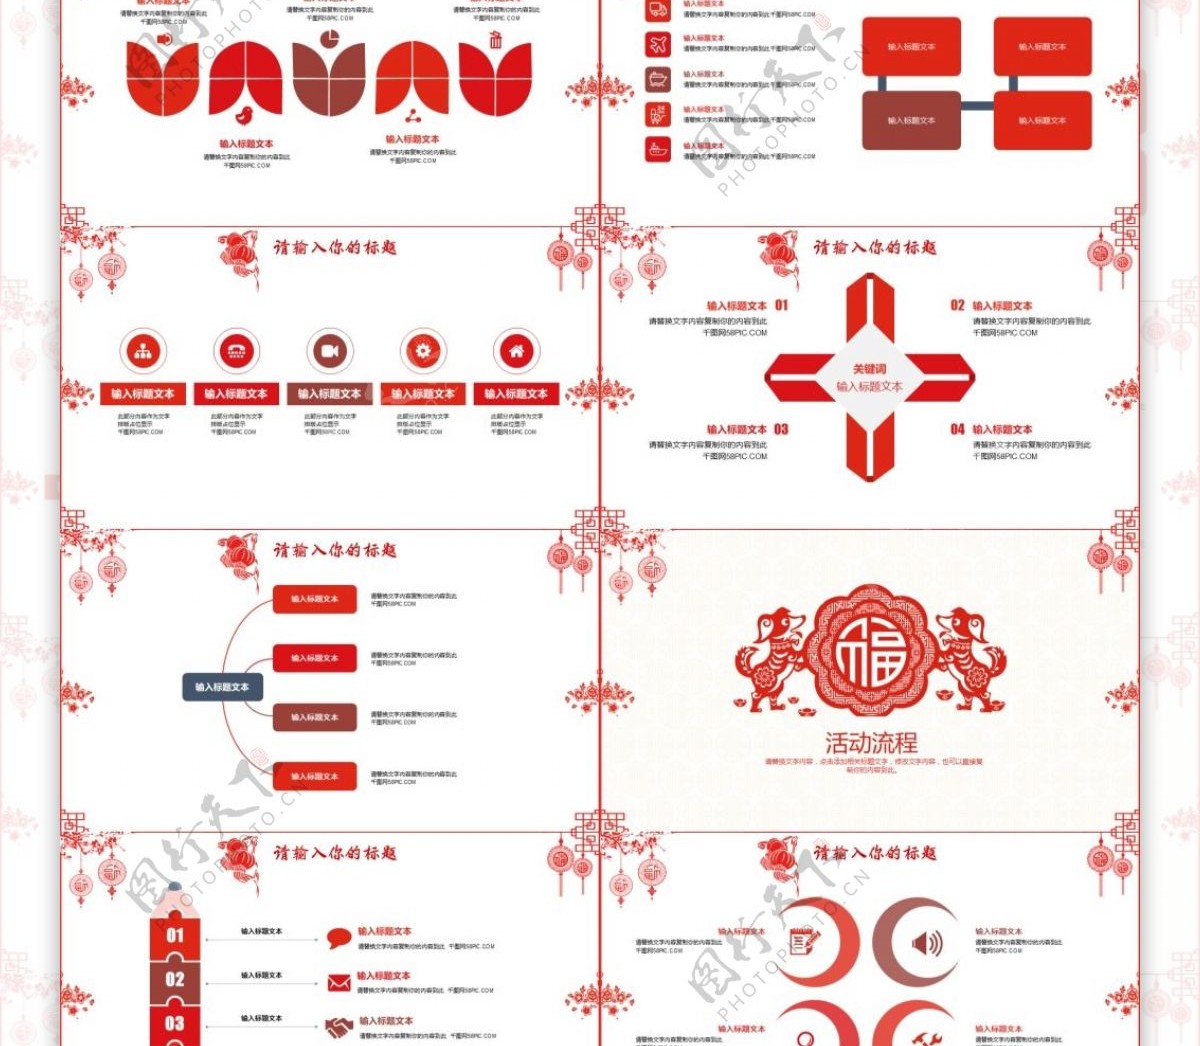 中国红元宵节节日庆典活动策划PPT模板